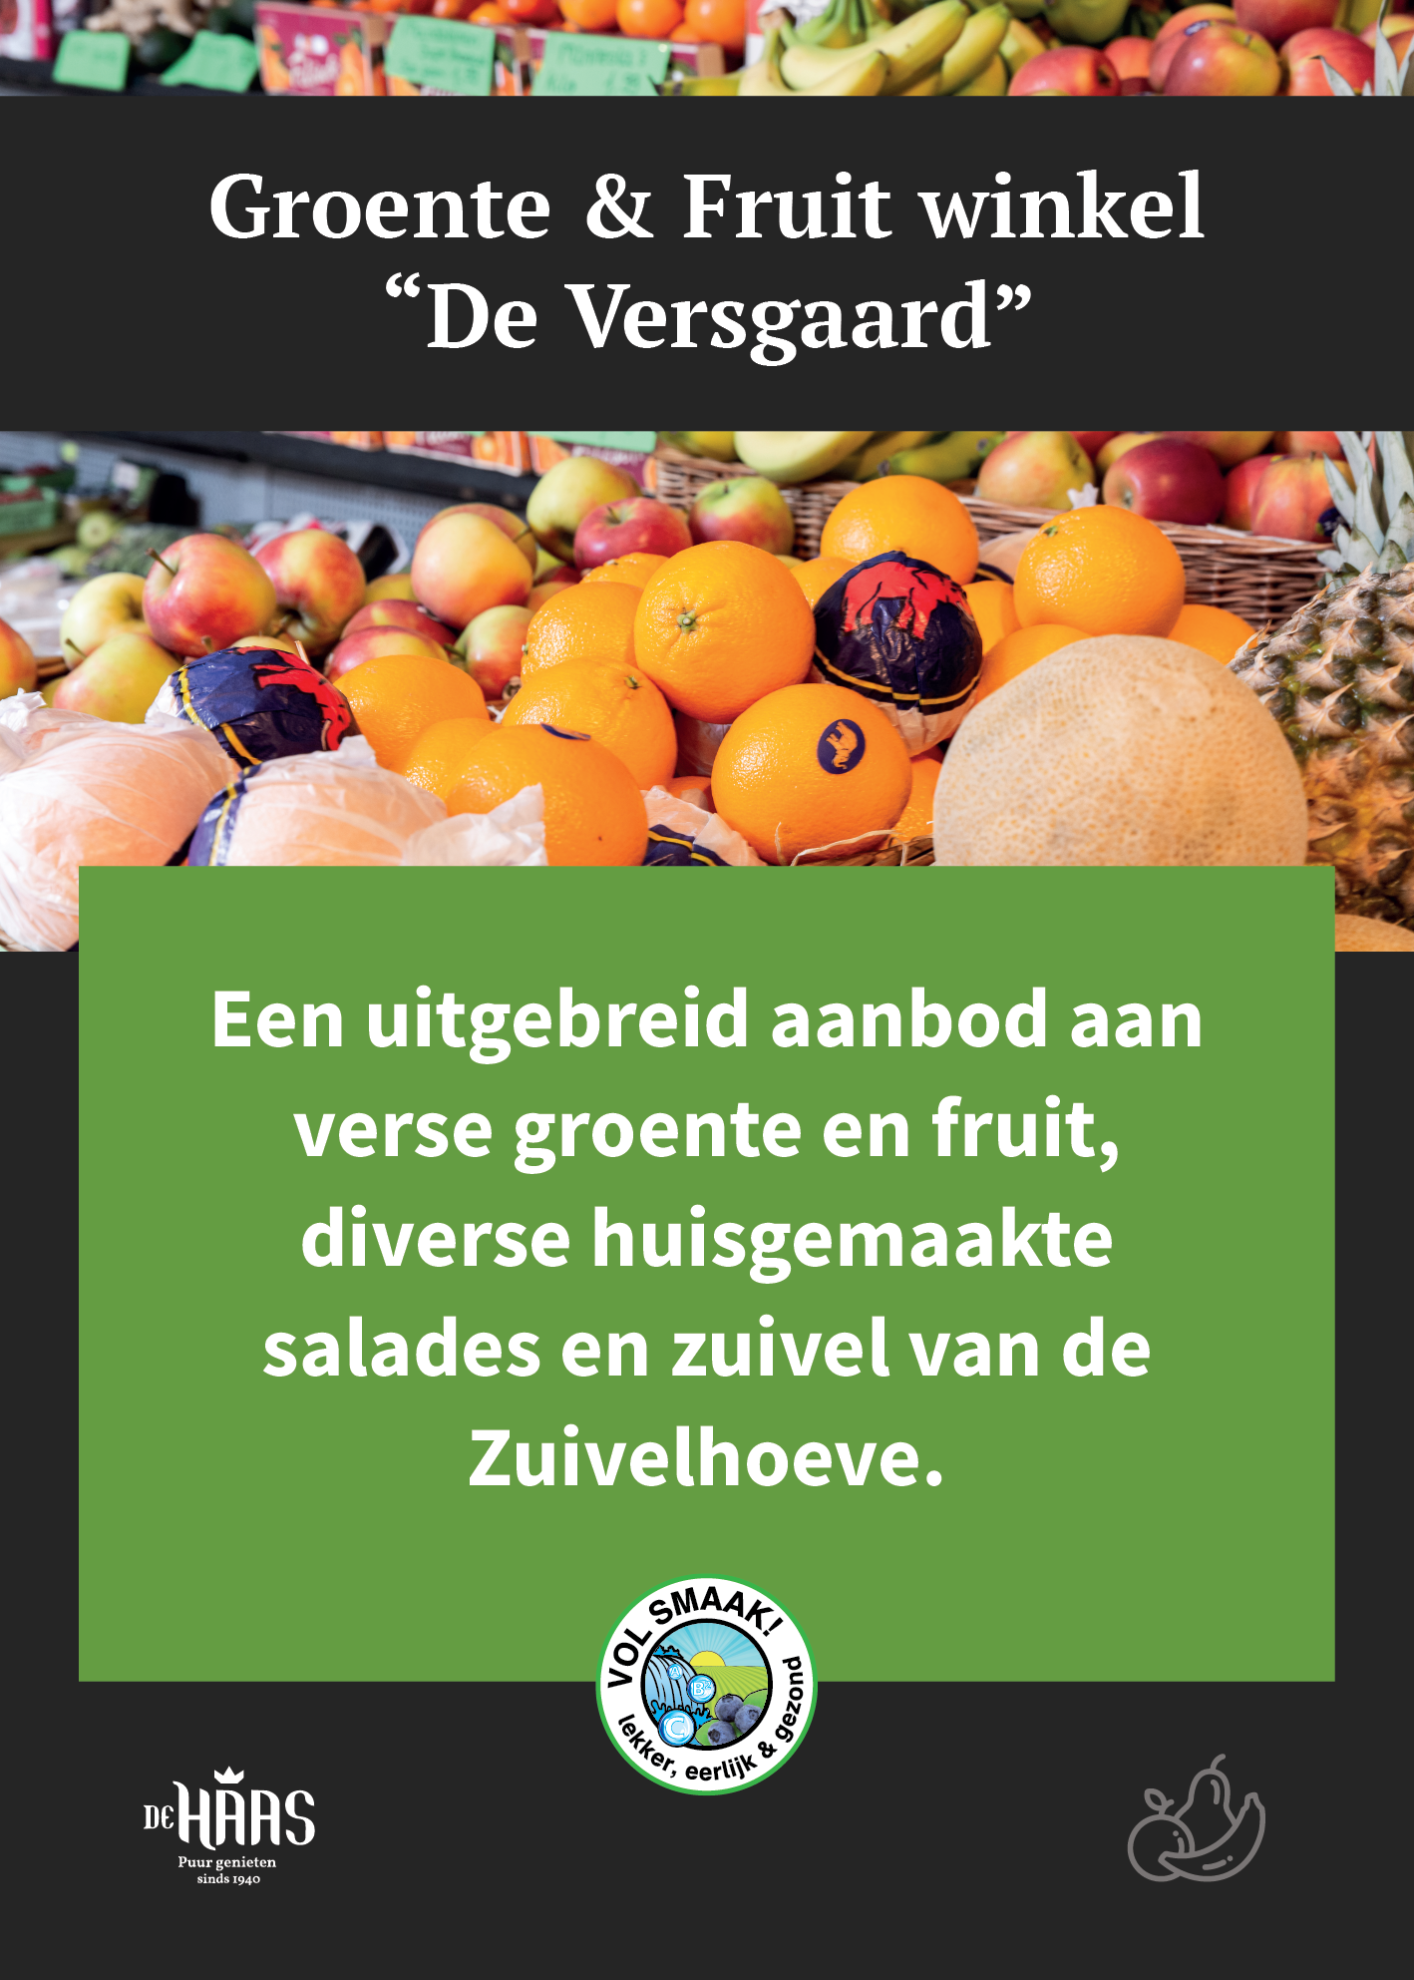 https://versgaard.nl/wp-content/uploads/2023/03/groente-en-fruit-versgaard2.png